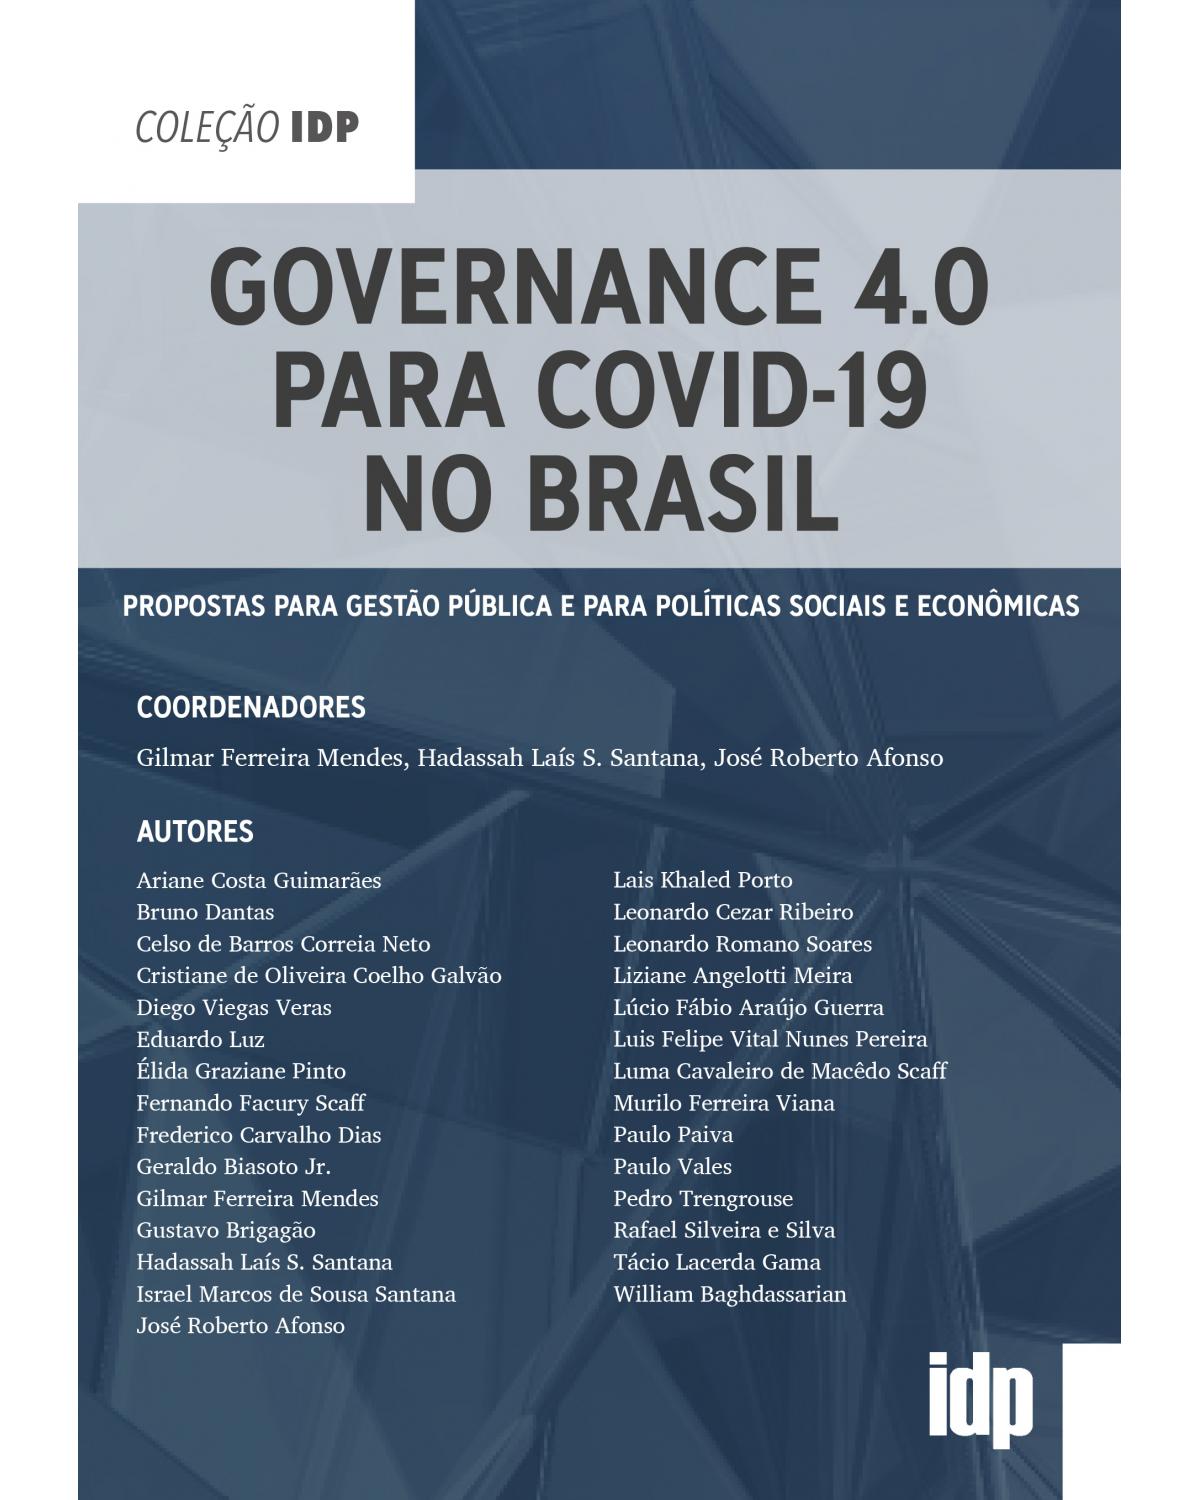 Governance 4.0 para Covid-19 no Brasil - propostas para gestão pública e para políticas sociais e econômicas - 1ª Edição | 2020